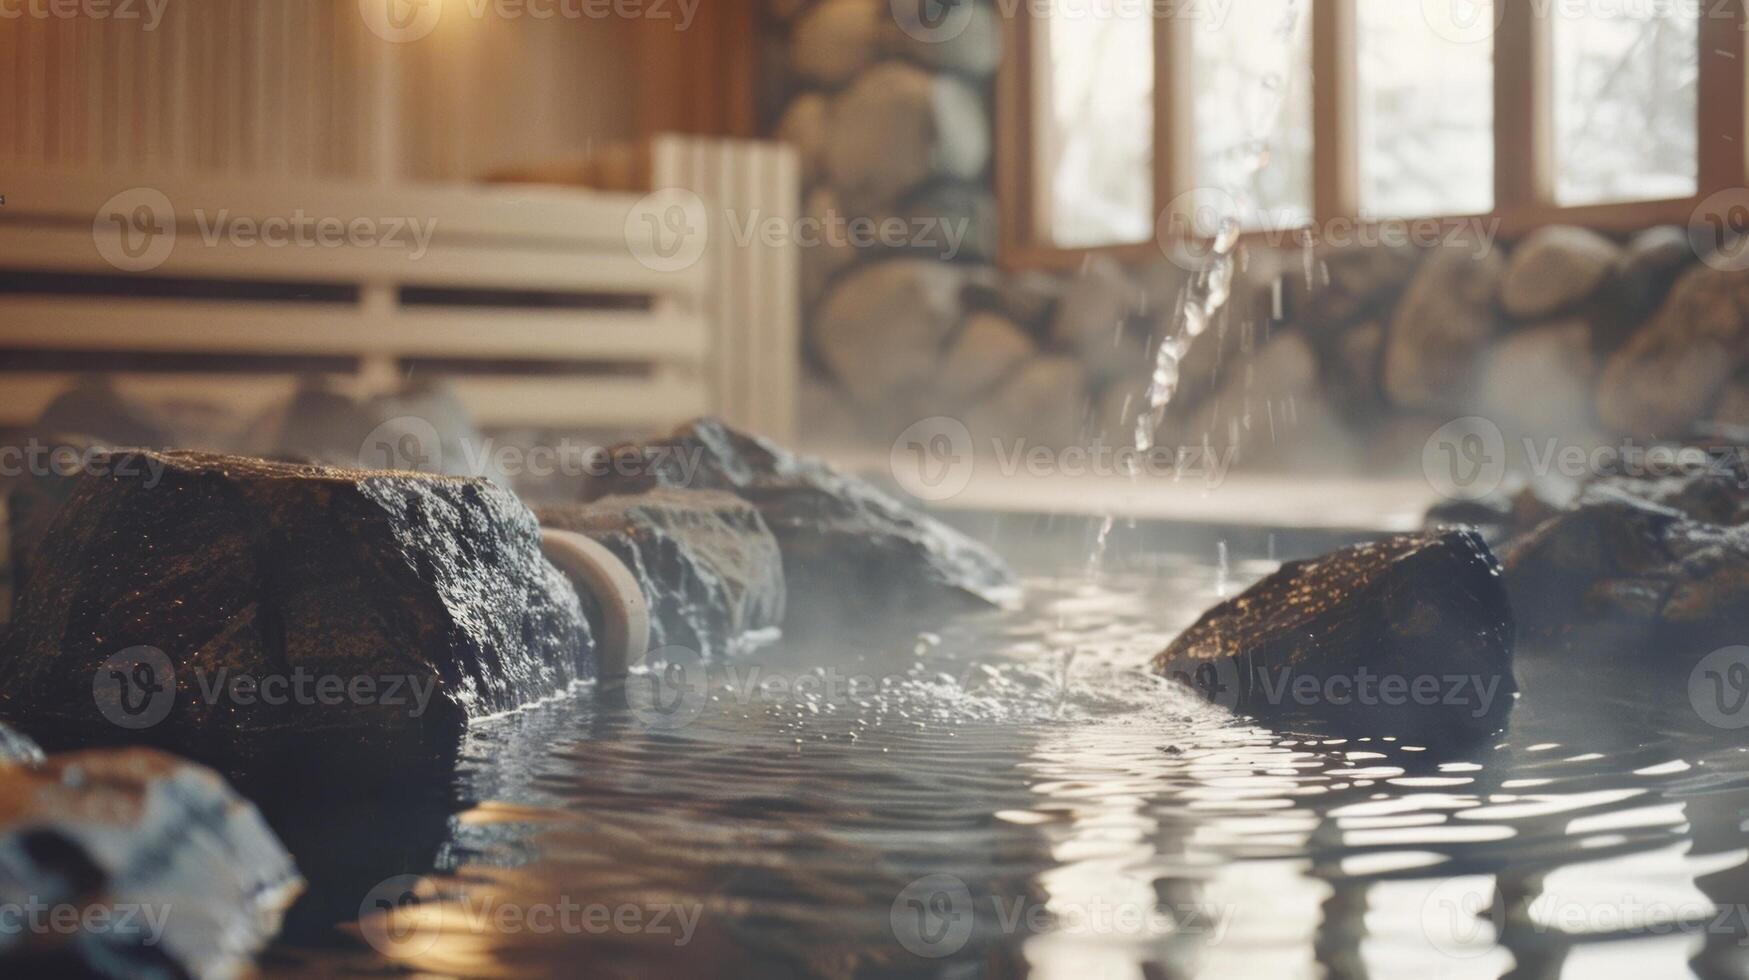 un' tranquillo, calmo e sereno ambientazione con individui assunzione giri scrosciante acqua al di sopra di caldo sauna rocce rilasciando vapore e la creazione di un' rinfrescante teutico atmosfera. foto